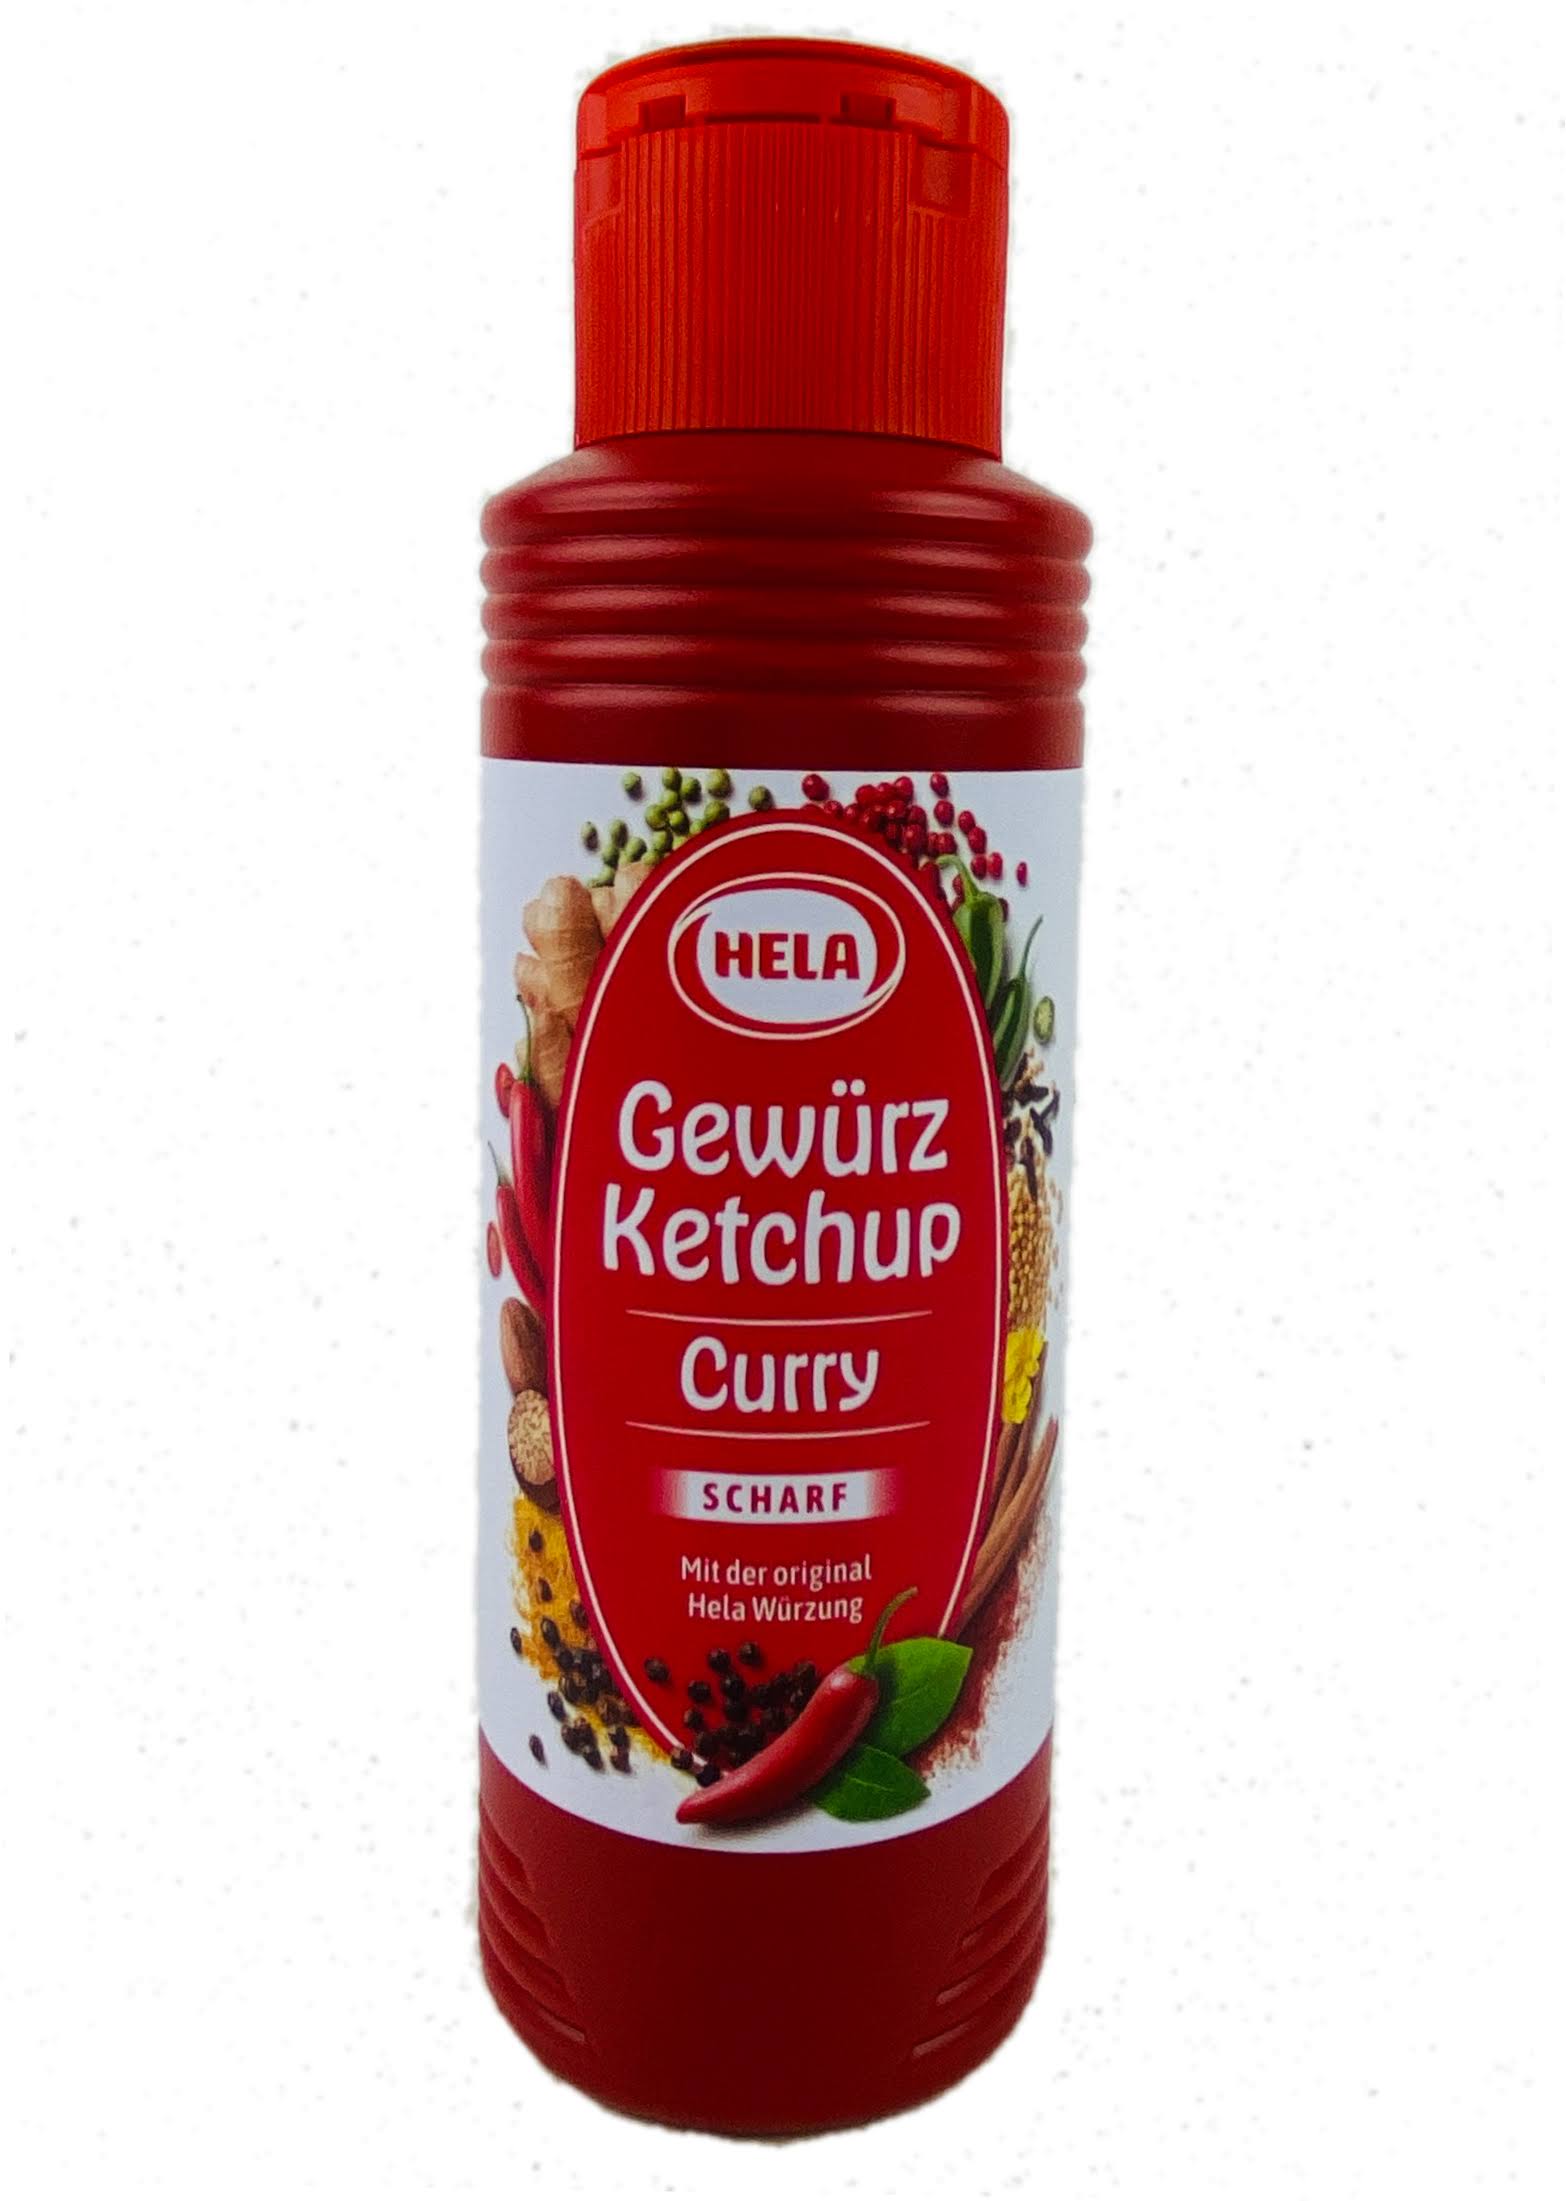 Hela Curry Gewuerz Ketchup - 348g